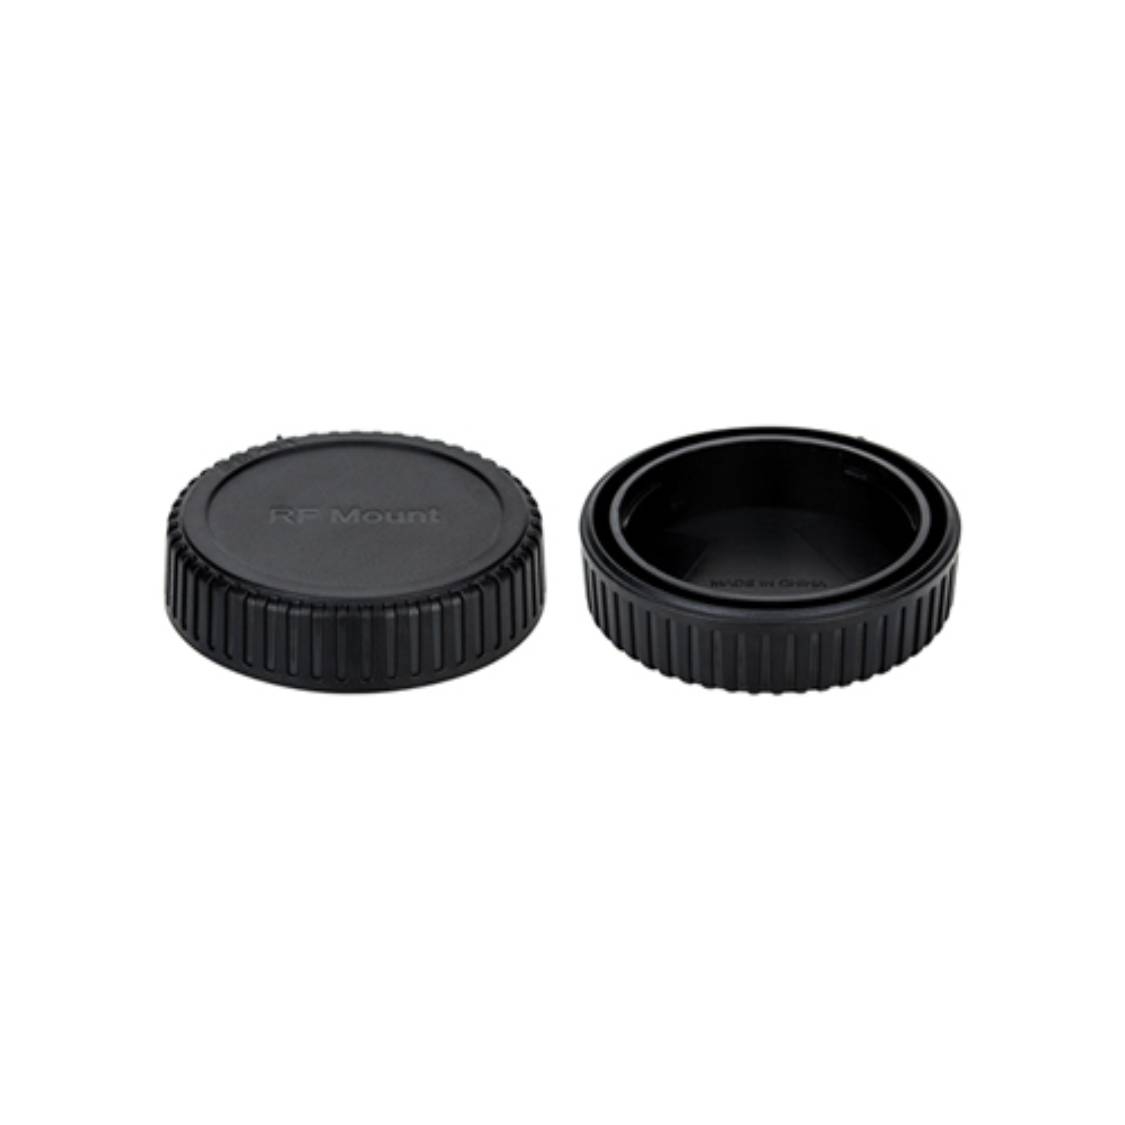 Promaster Rear Lens Cap (Canon RF)